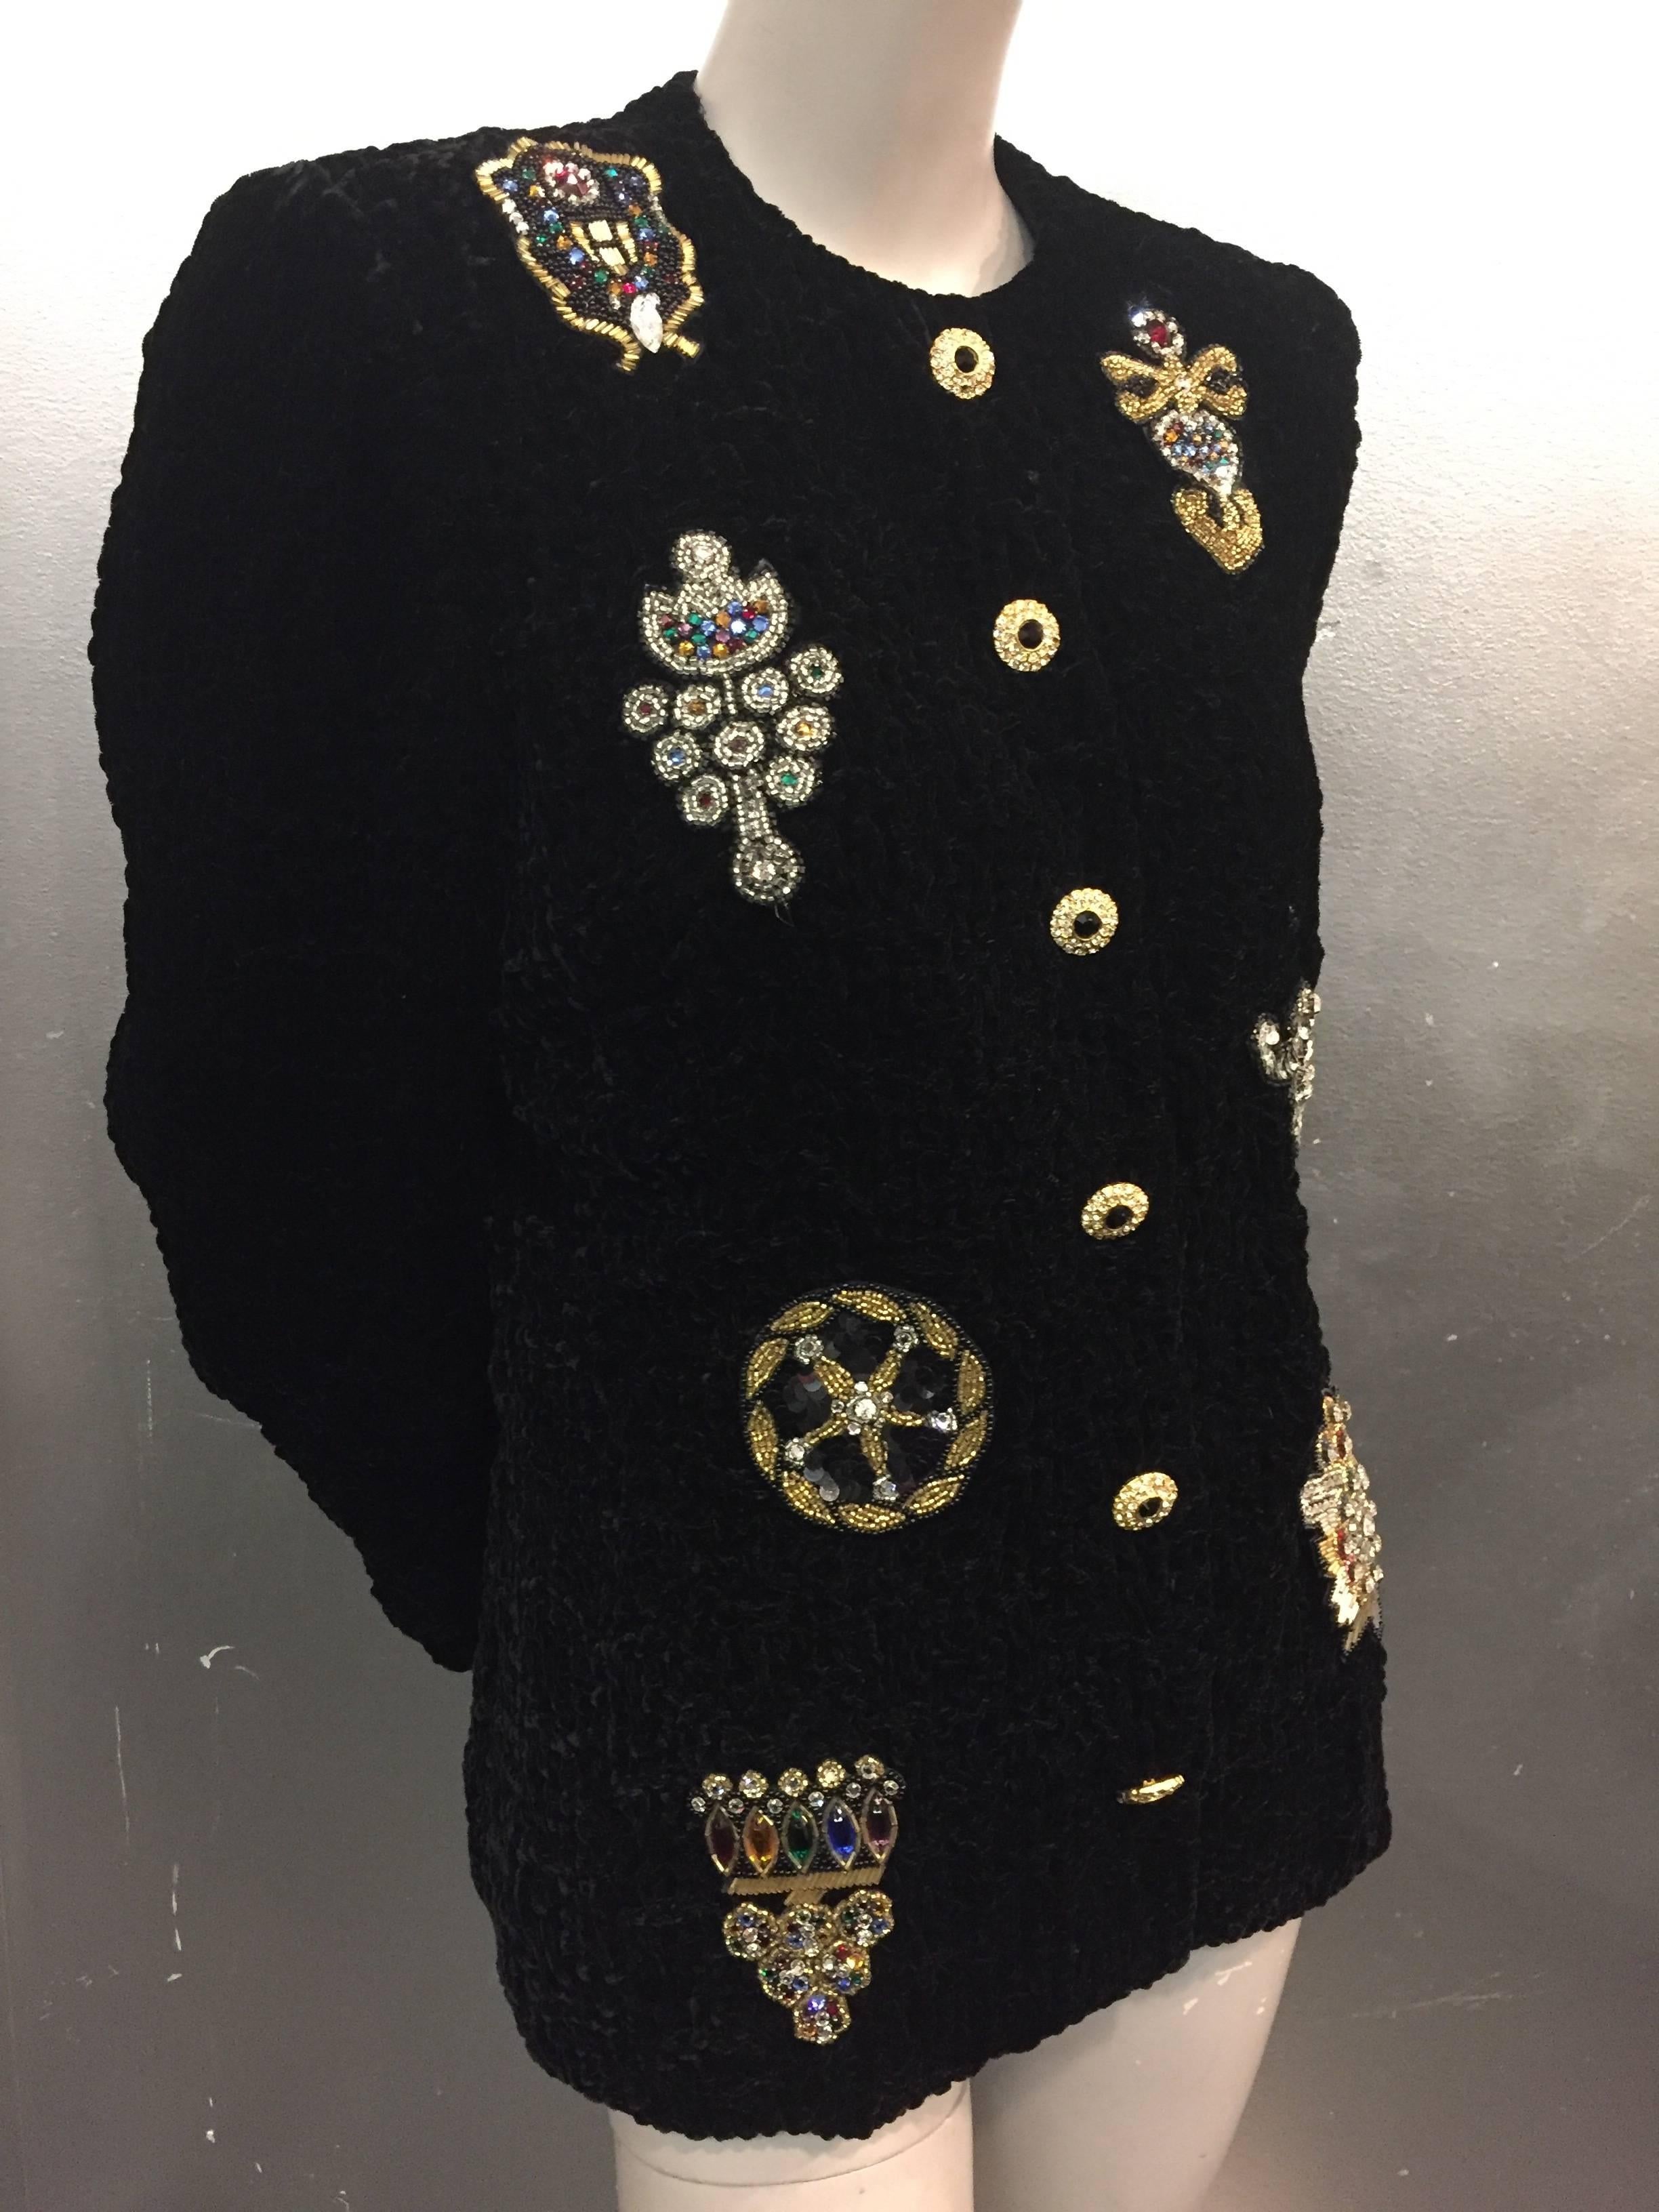 Une fabuleuse veste de soirée des années 1980 en velours noir froncé avec des fermetures à pression sur le devant et des boutons en strass sur le dessus.  8 grandes applications de médaillons perlés et pailletés ornent le devant. 